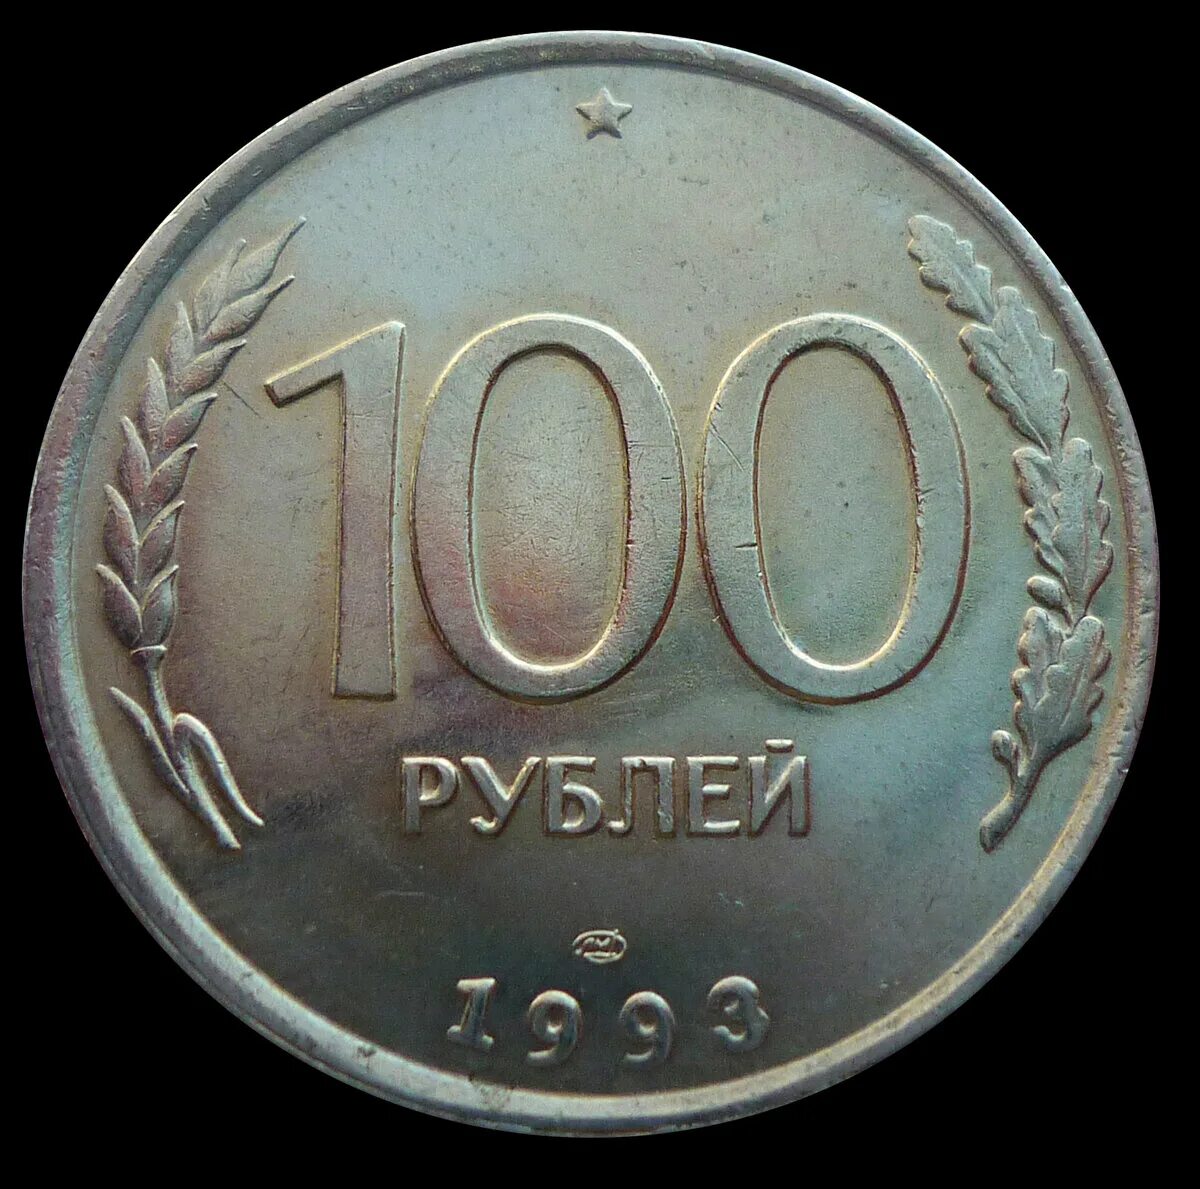 100 Рублей 1993 года. Монеты 1993 года. 100 Руб СССР монета. Рубли 1993.